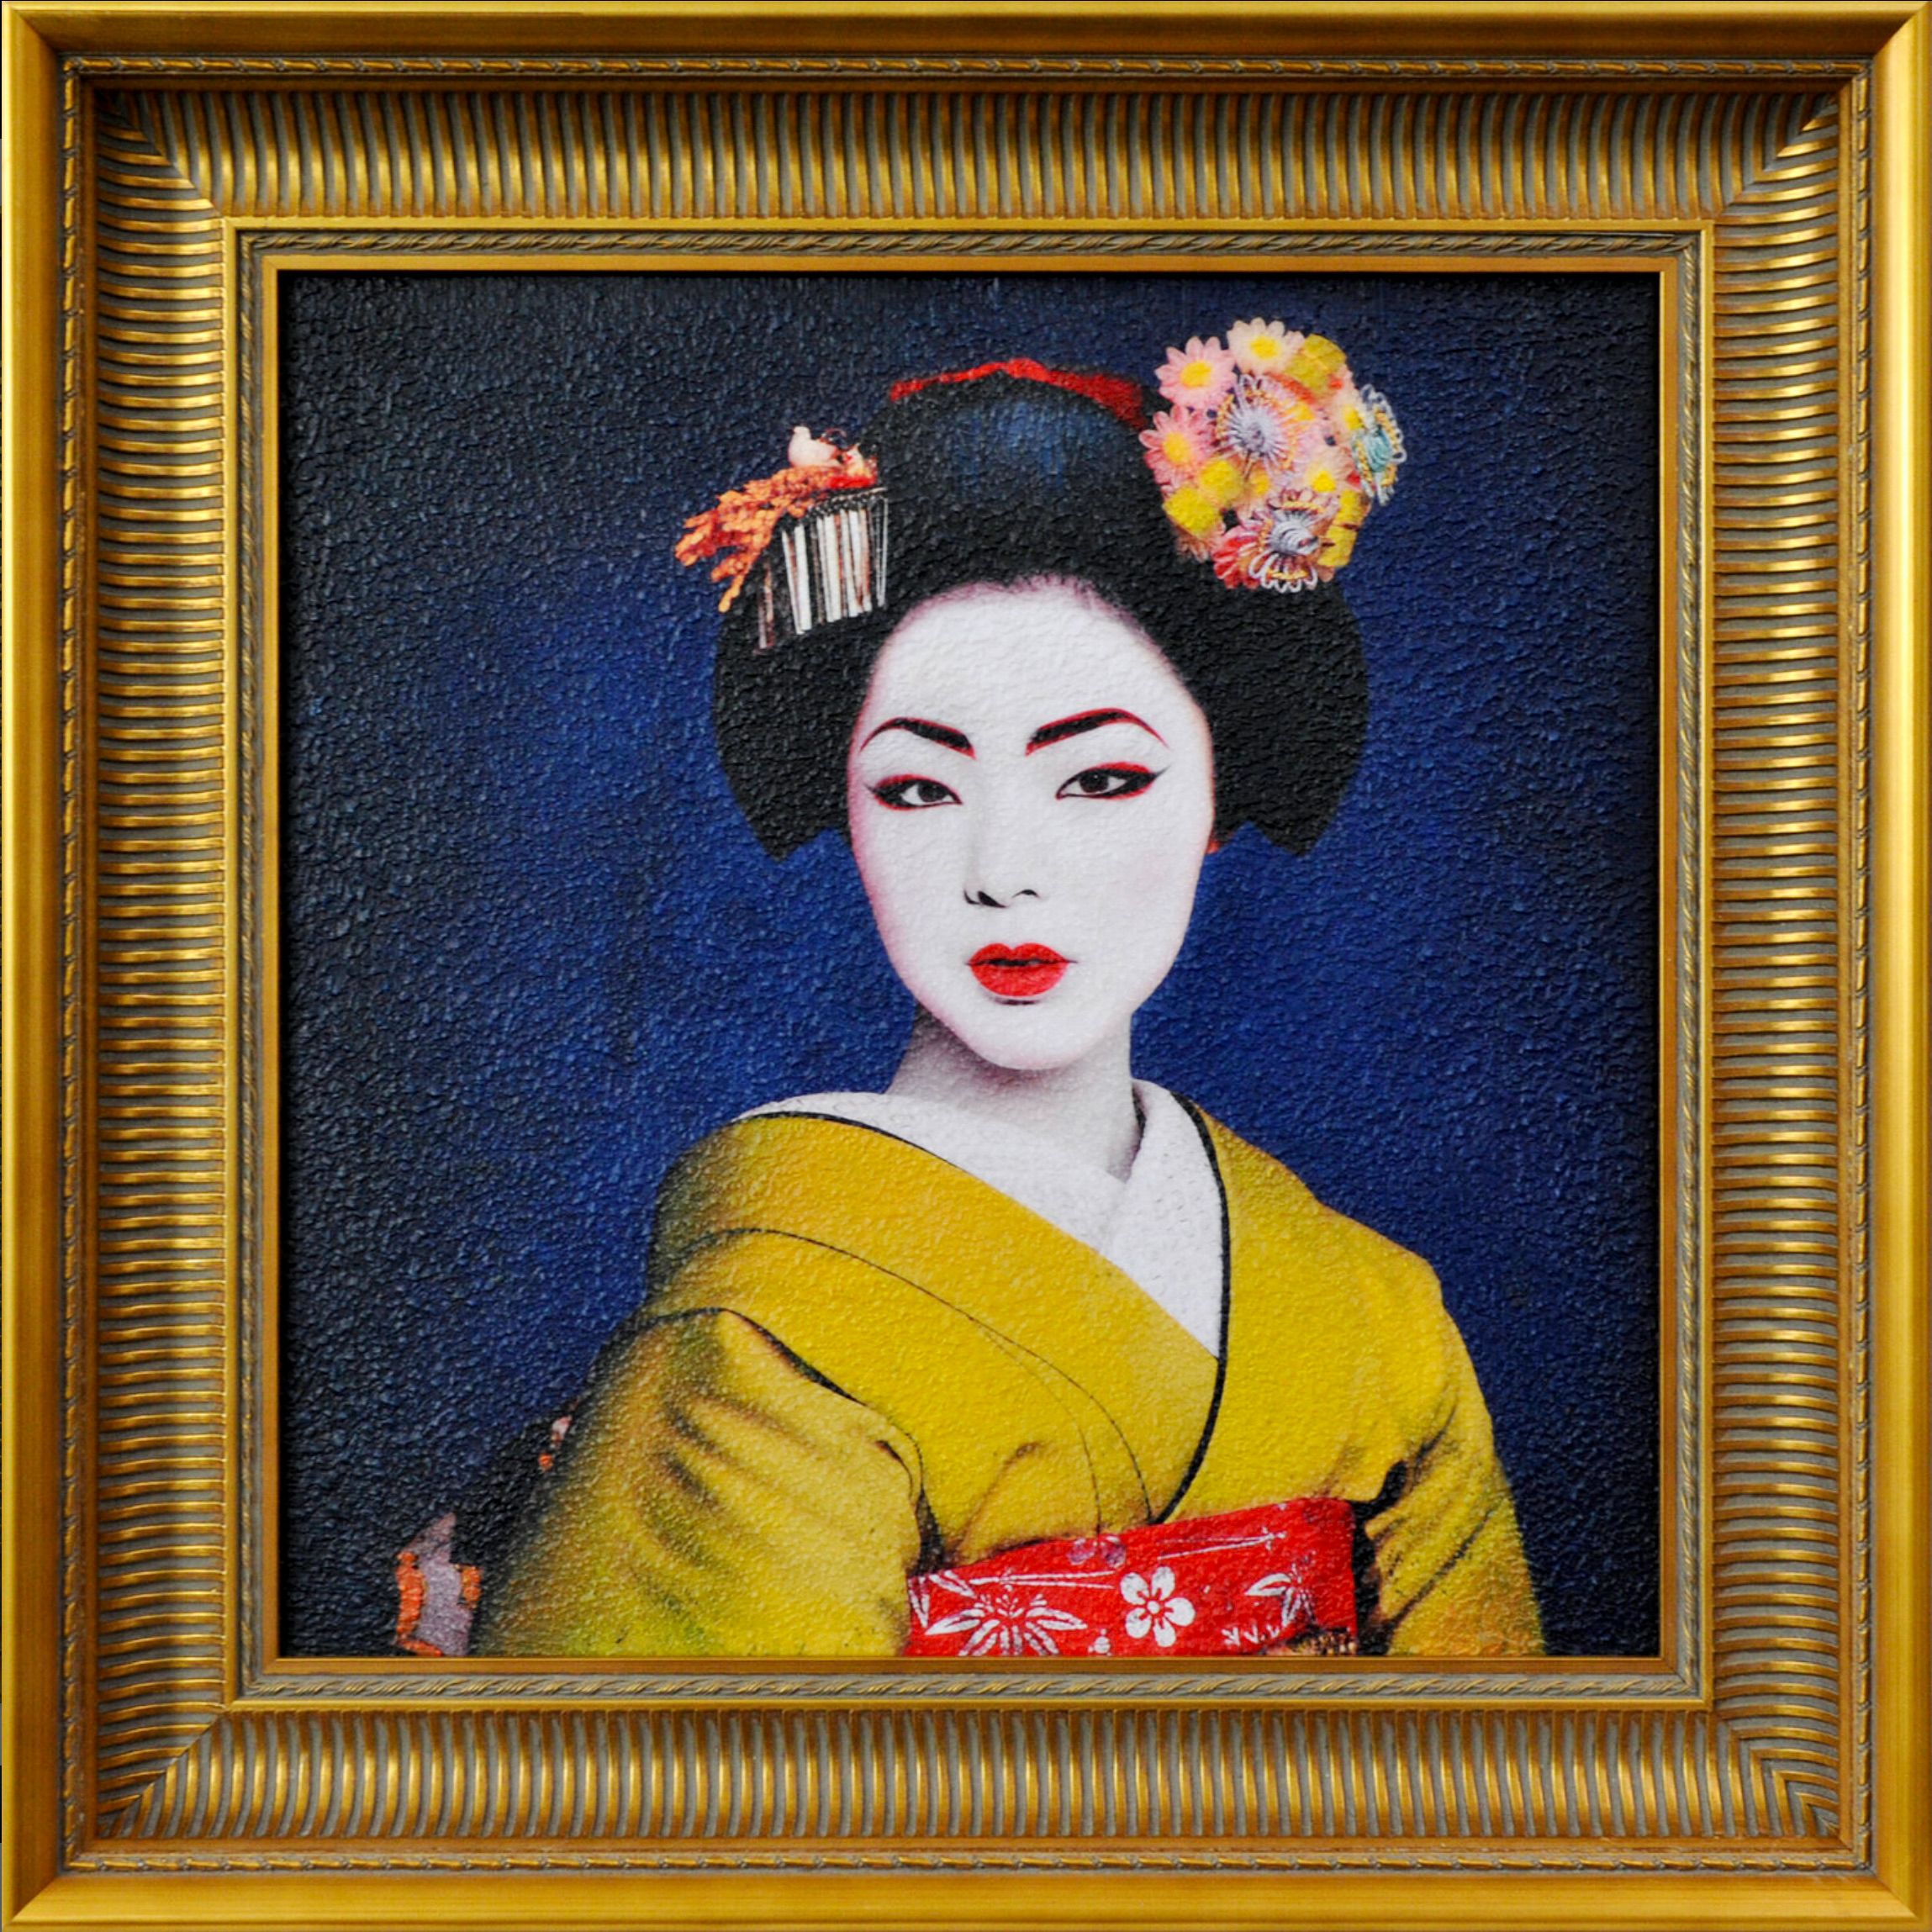 La "Geisha" de Karin Vermeer est un portrait haut en couleur d'une geisha.